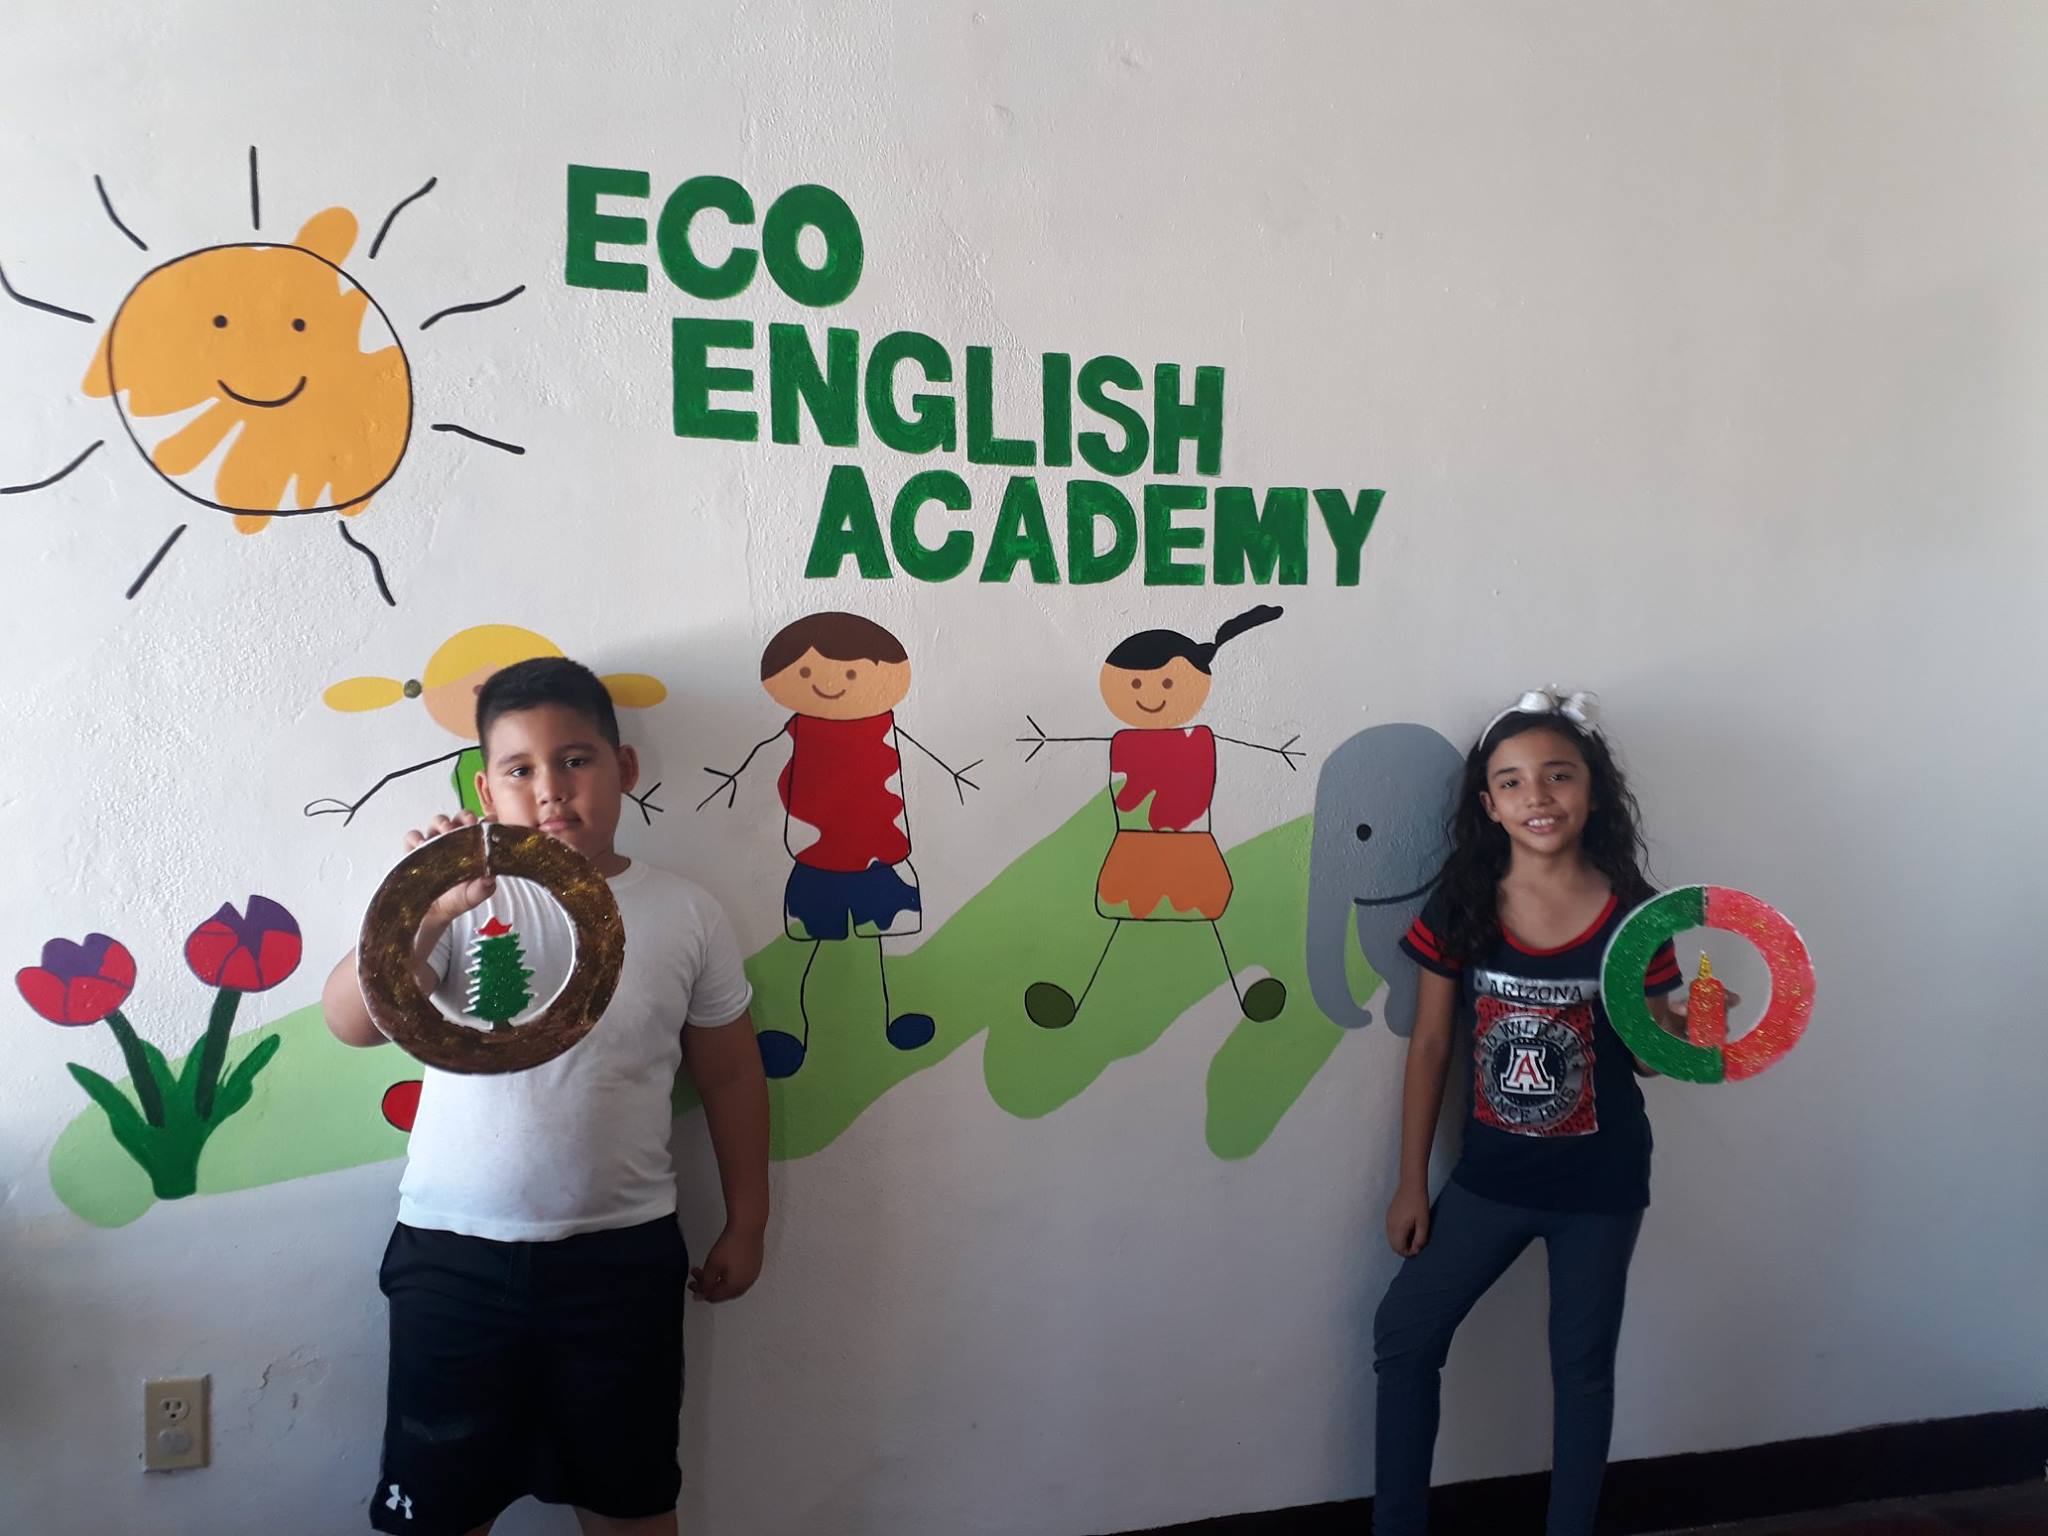 Nosotros Eco english